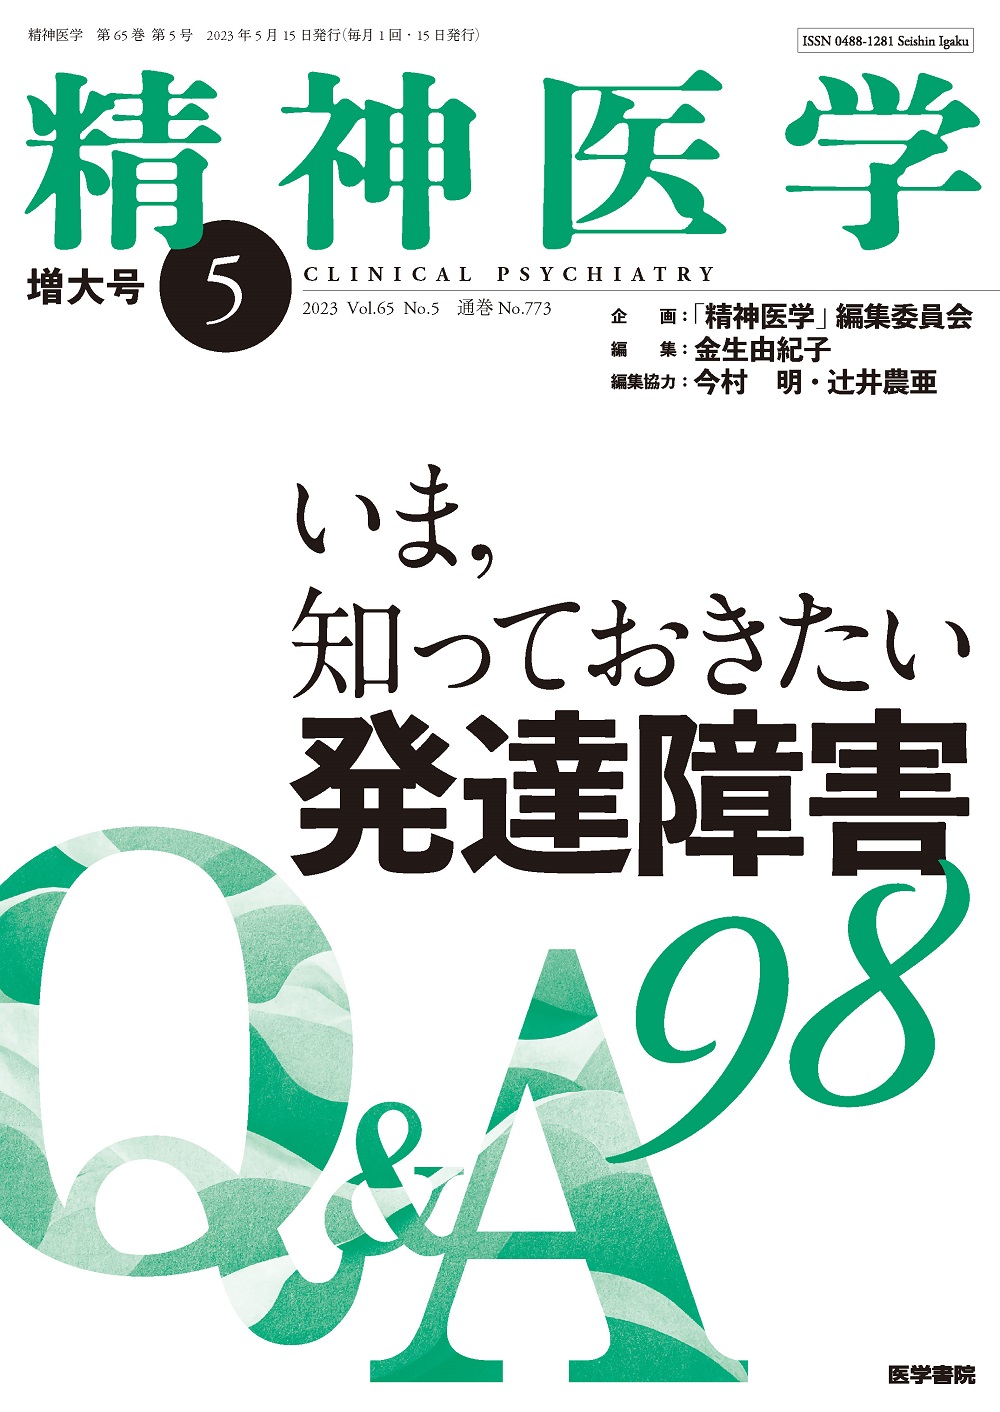 精神医学 Vol.65 No.5【電子版】 | 医書.jp